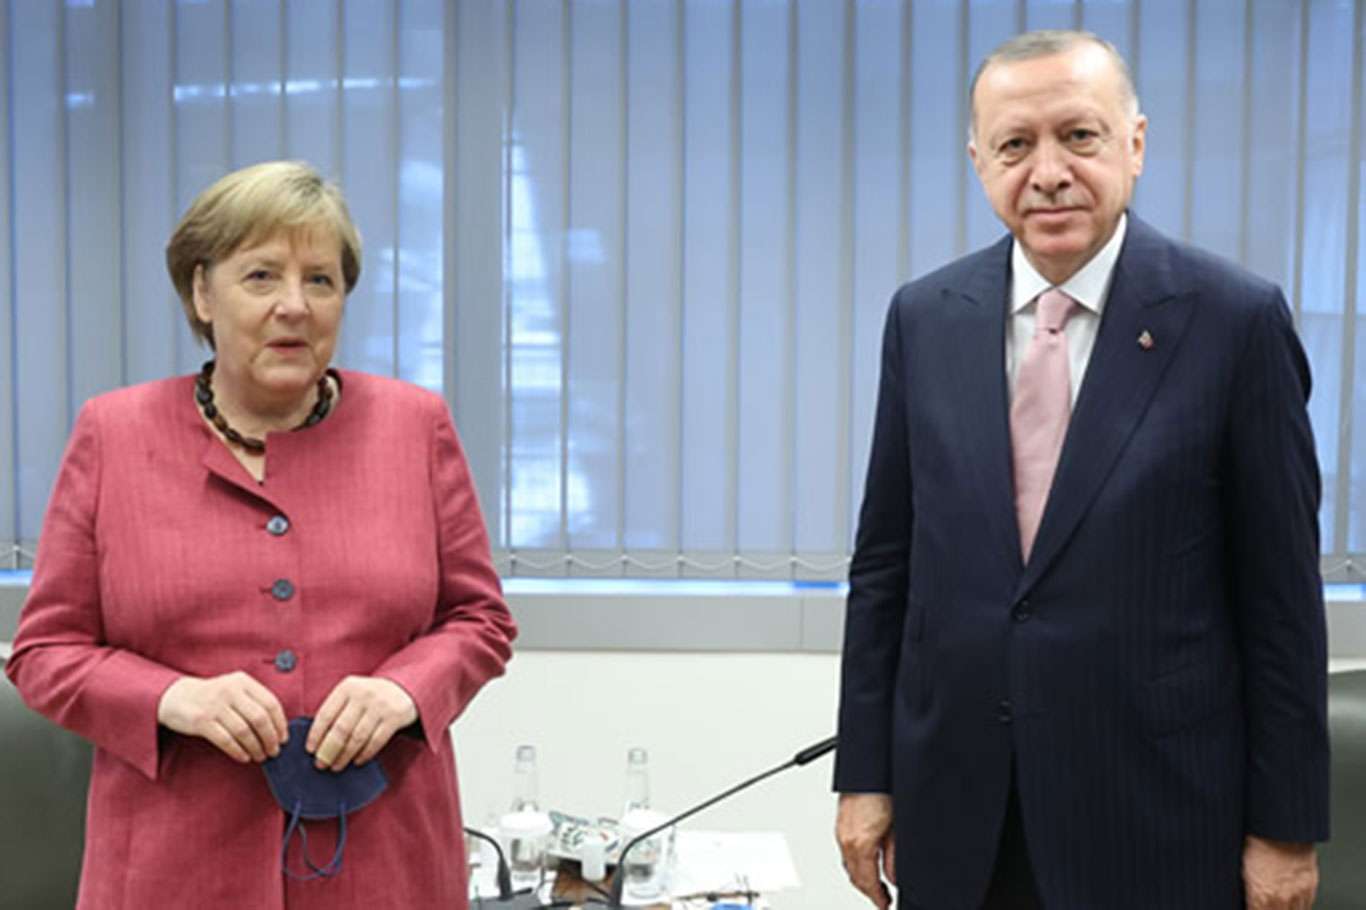 Erdoğan meets with German Chancellor Merkel